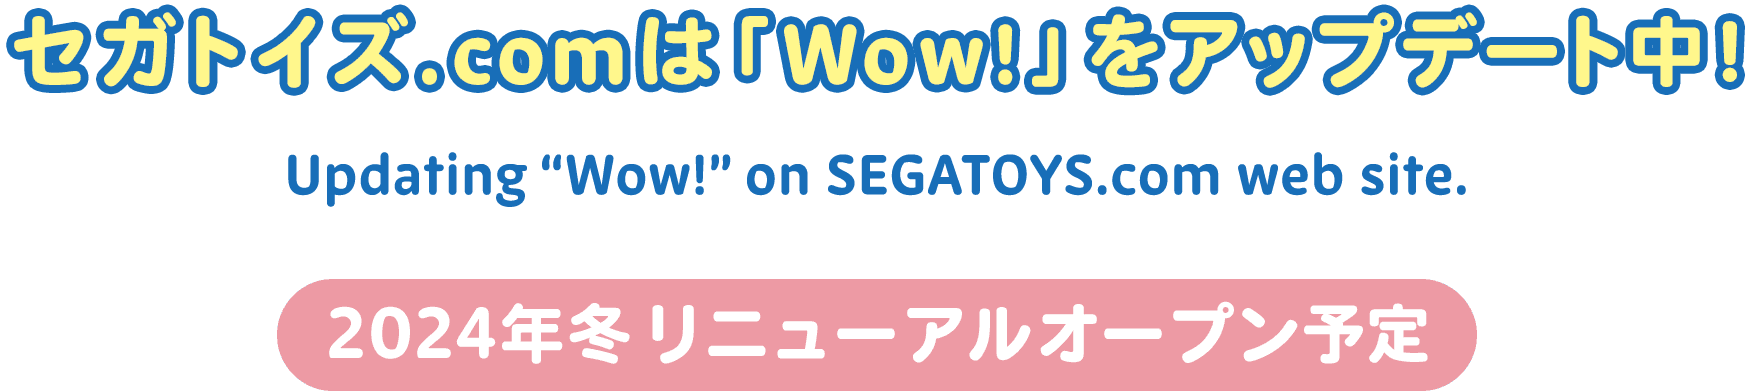 セガトイズ.COMは「Wow!」をアップデート中! Updating 'Wow!' on SEGATOYS.com web site. 2024年冬 リニューアルオープン予定